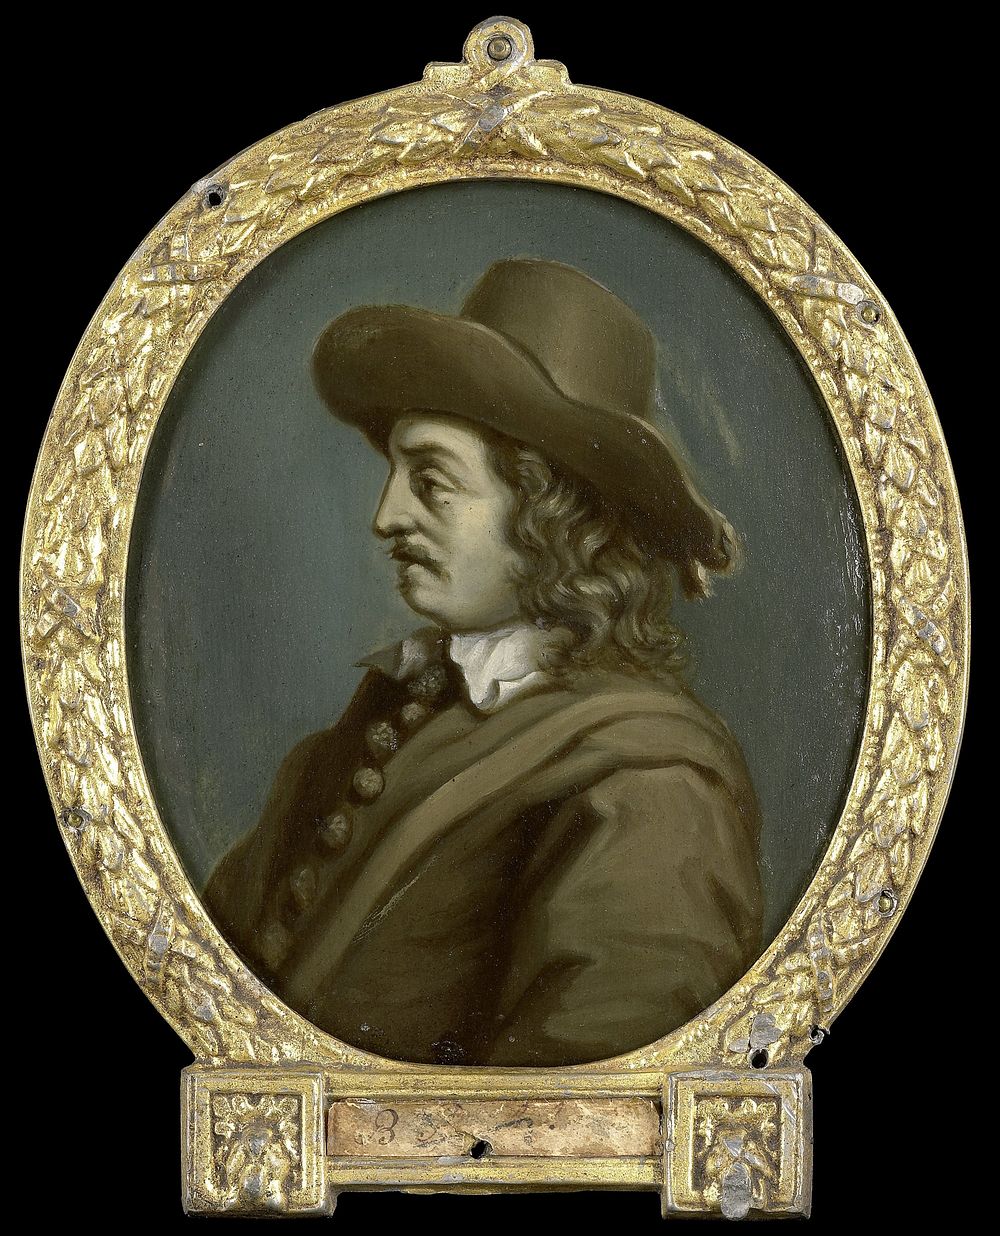 Portrait of Matthys van de Merwede, Lord of Clootwyck, Poet in Dordrecht (Mathias de Merwede de Clootwyck) (1700 - 1732) by…